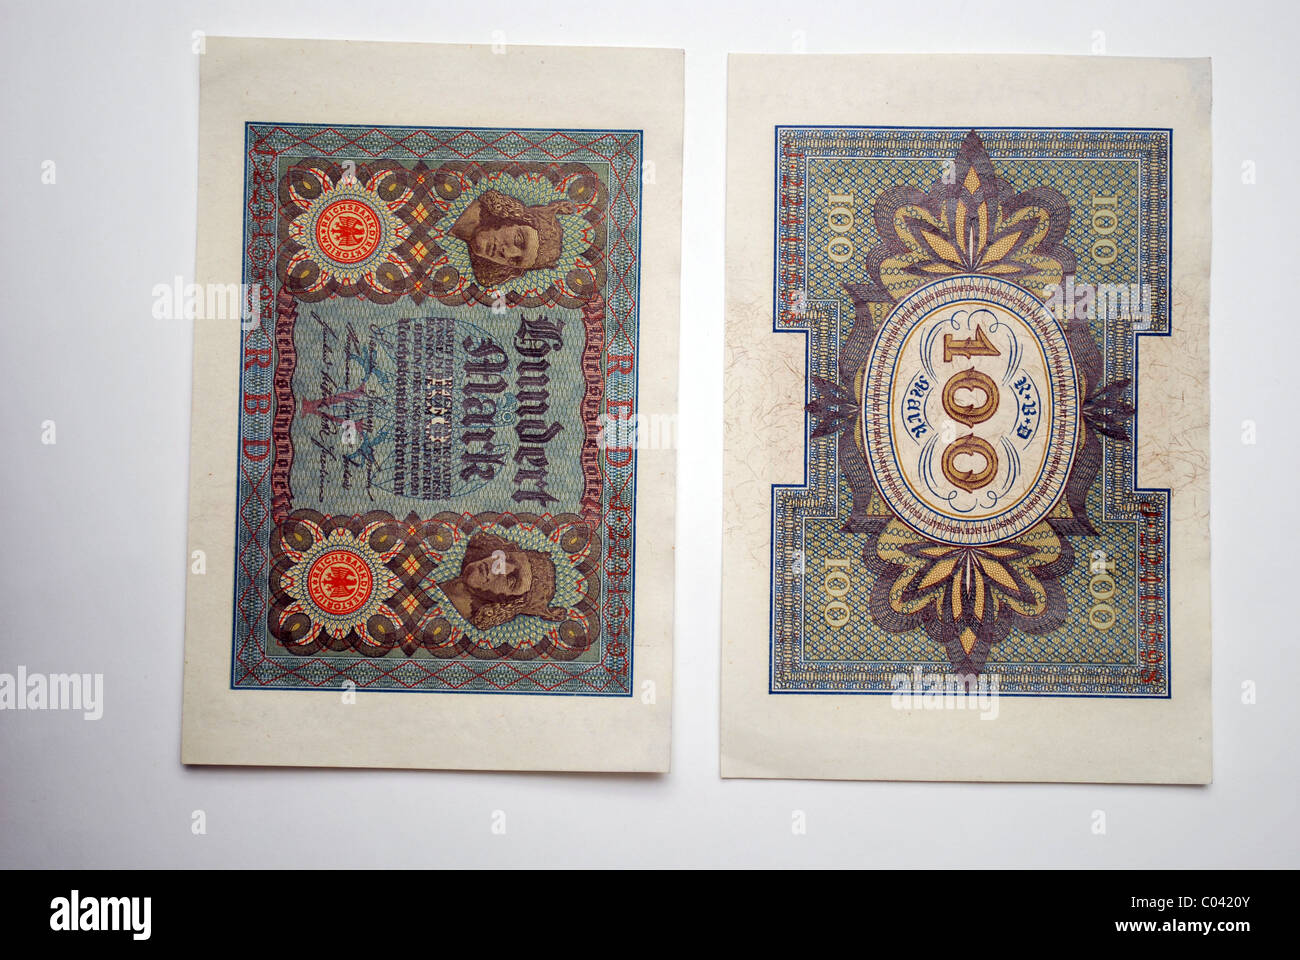 German paper money, one hundred 'Deutsche Reichsmark' from 1920. Stock Photo